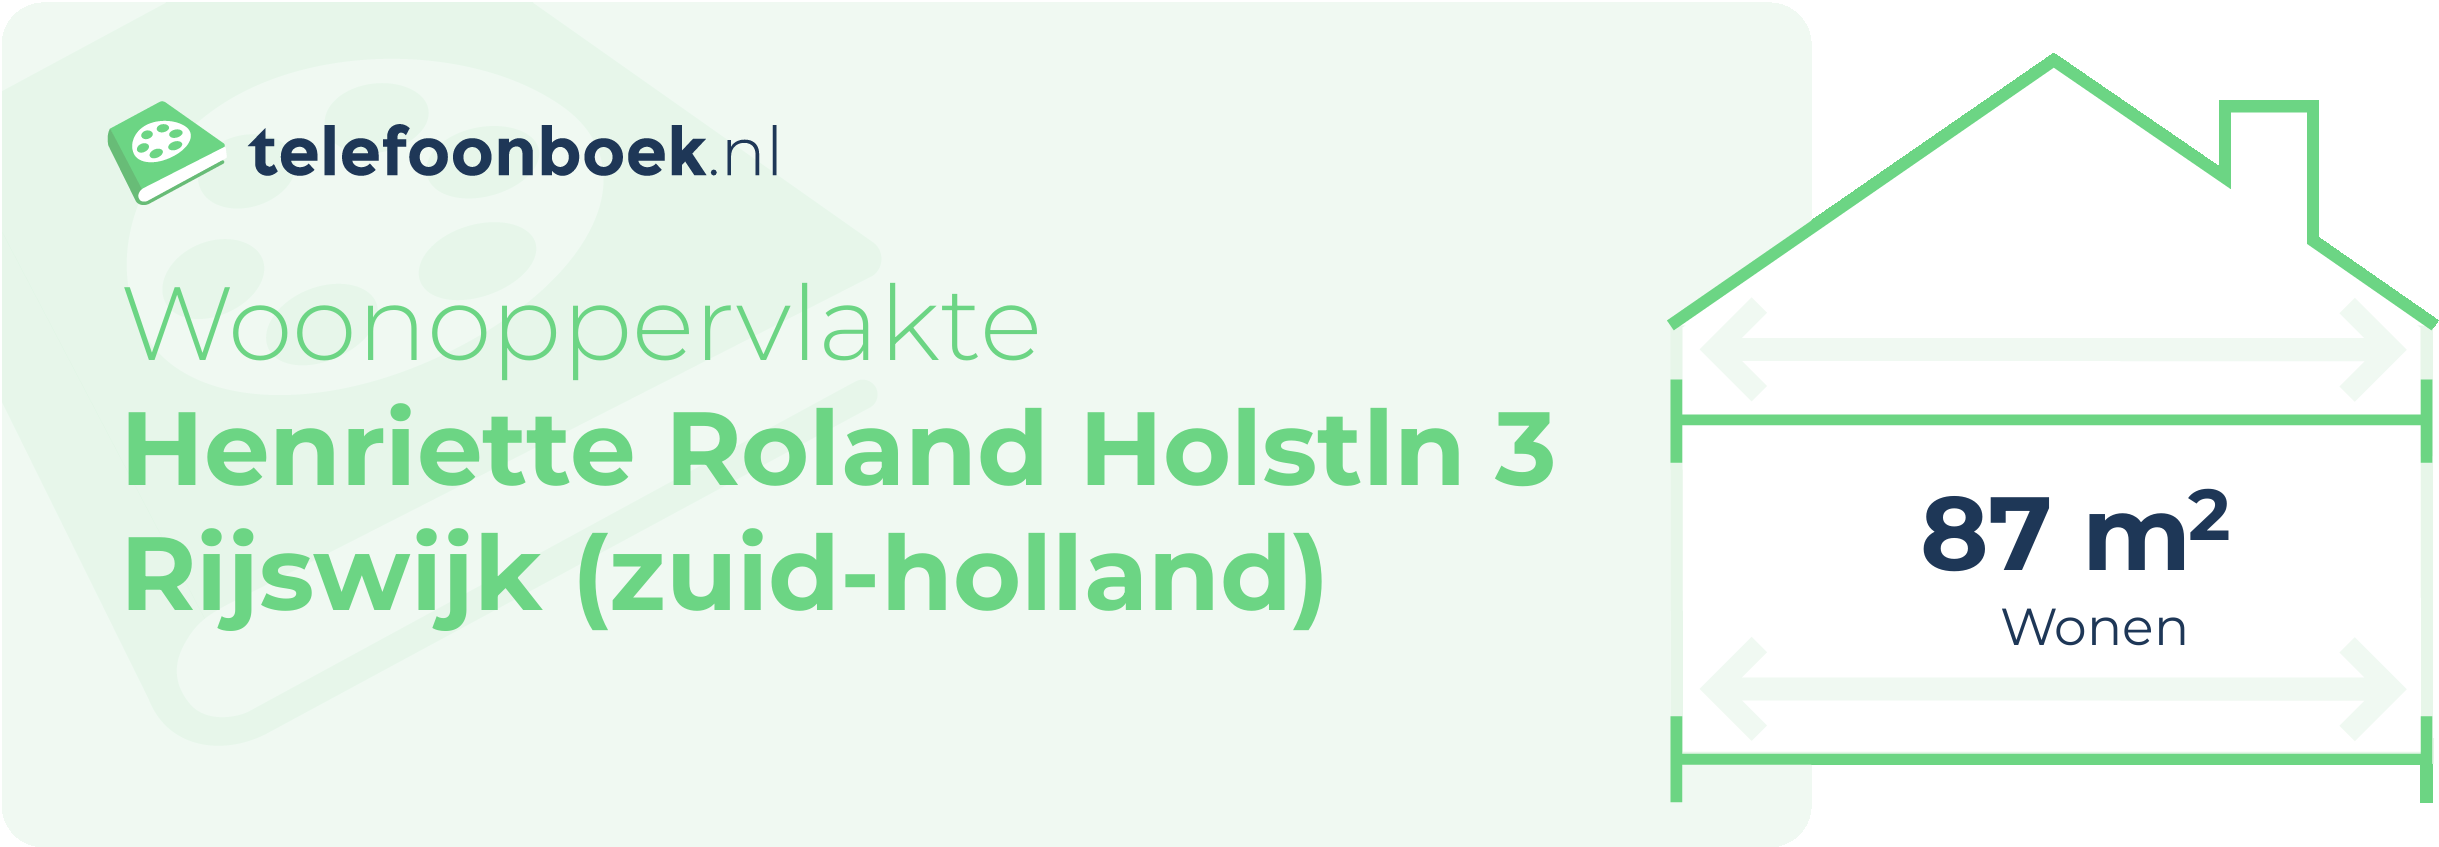 Woonoppervlakte Henriette Roland Holstln 3 Rijswijk (Zuid-Holland)